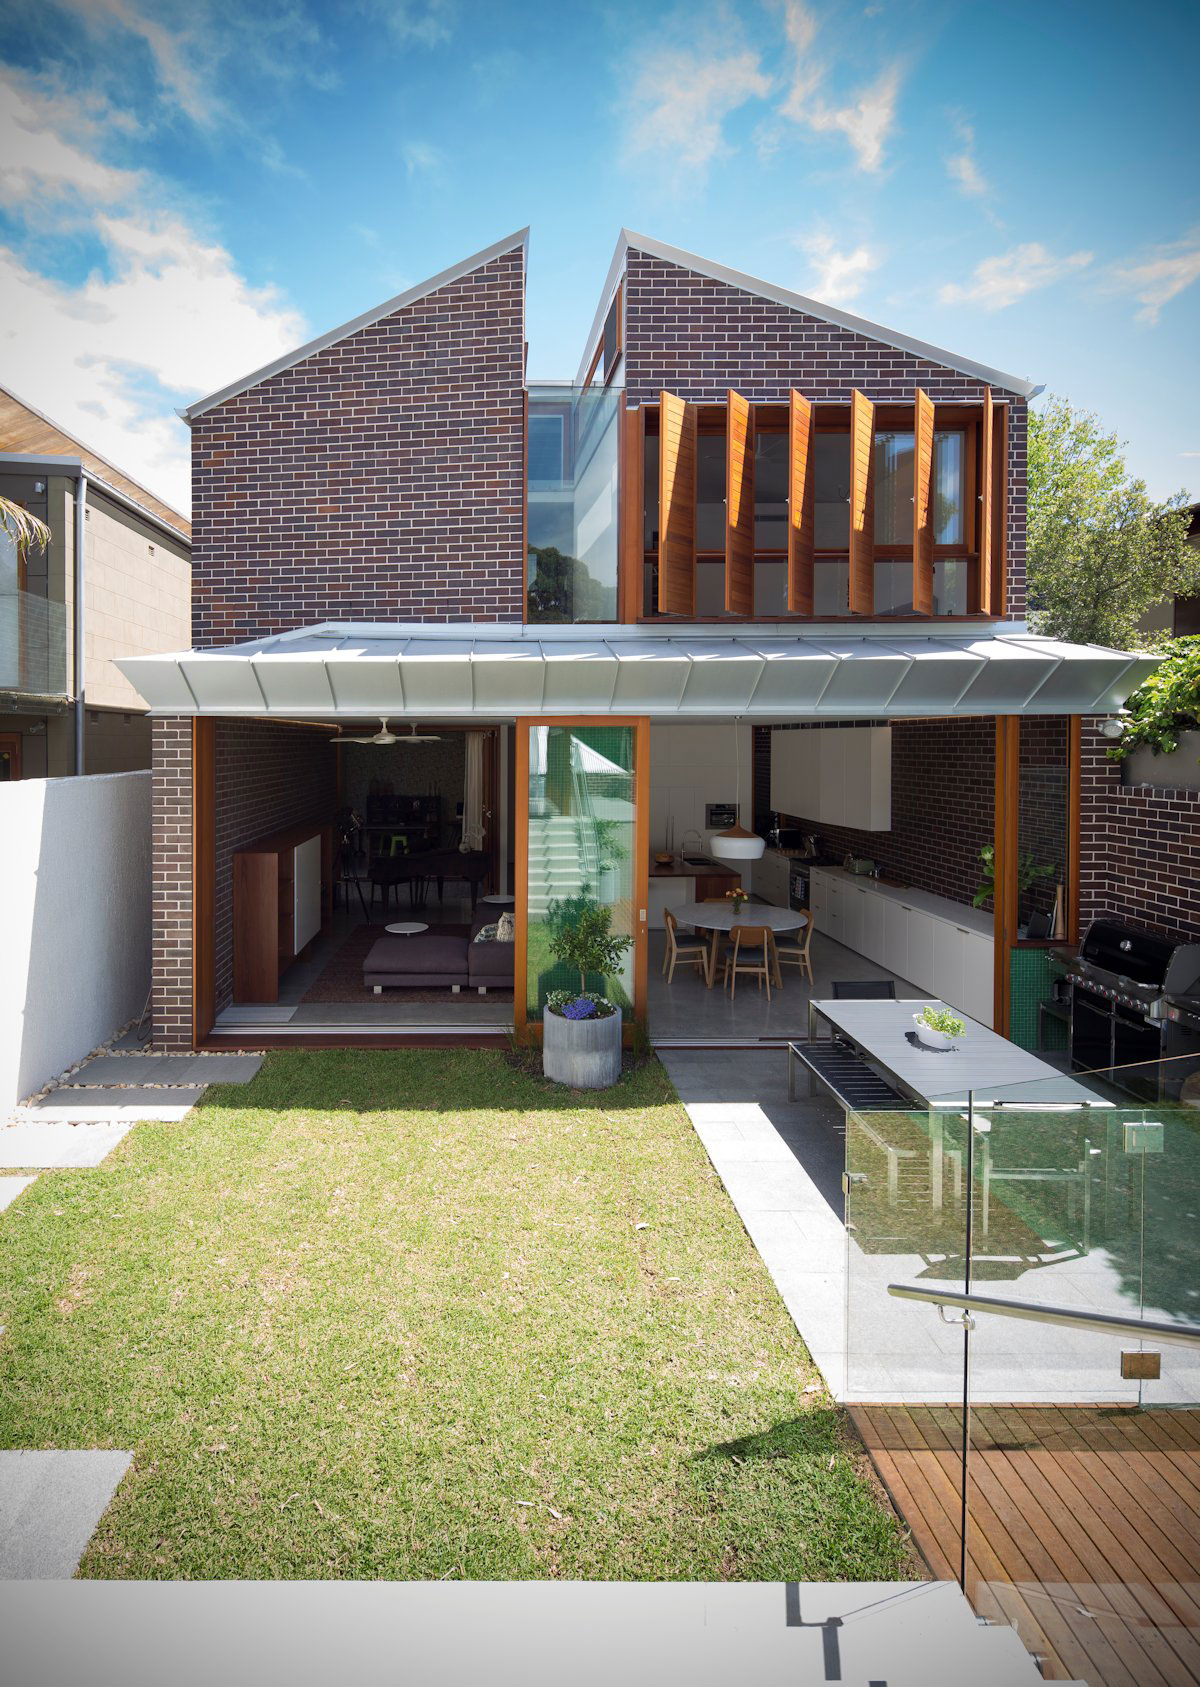 Green-House-by-Carterwilliamson-Architects Australisk arkitektur och några vackra hus för att inspirera dig